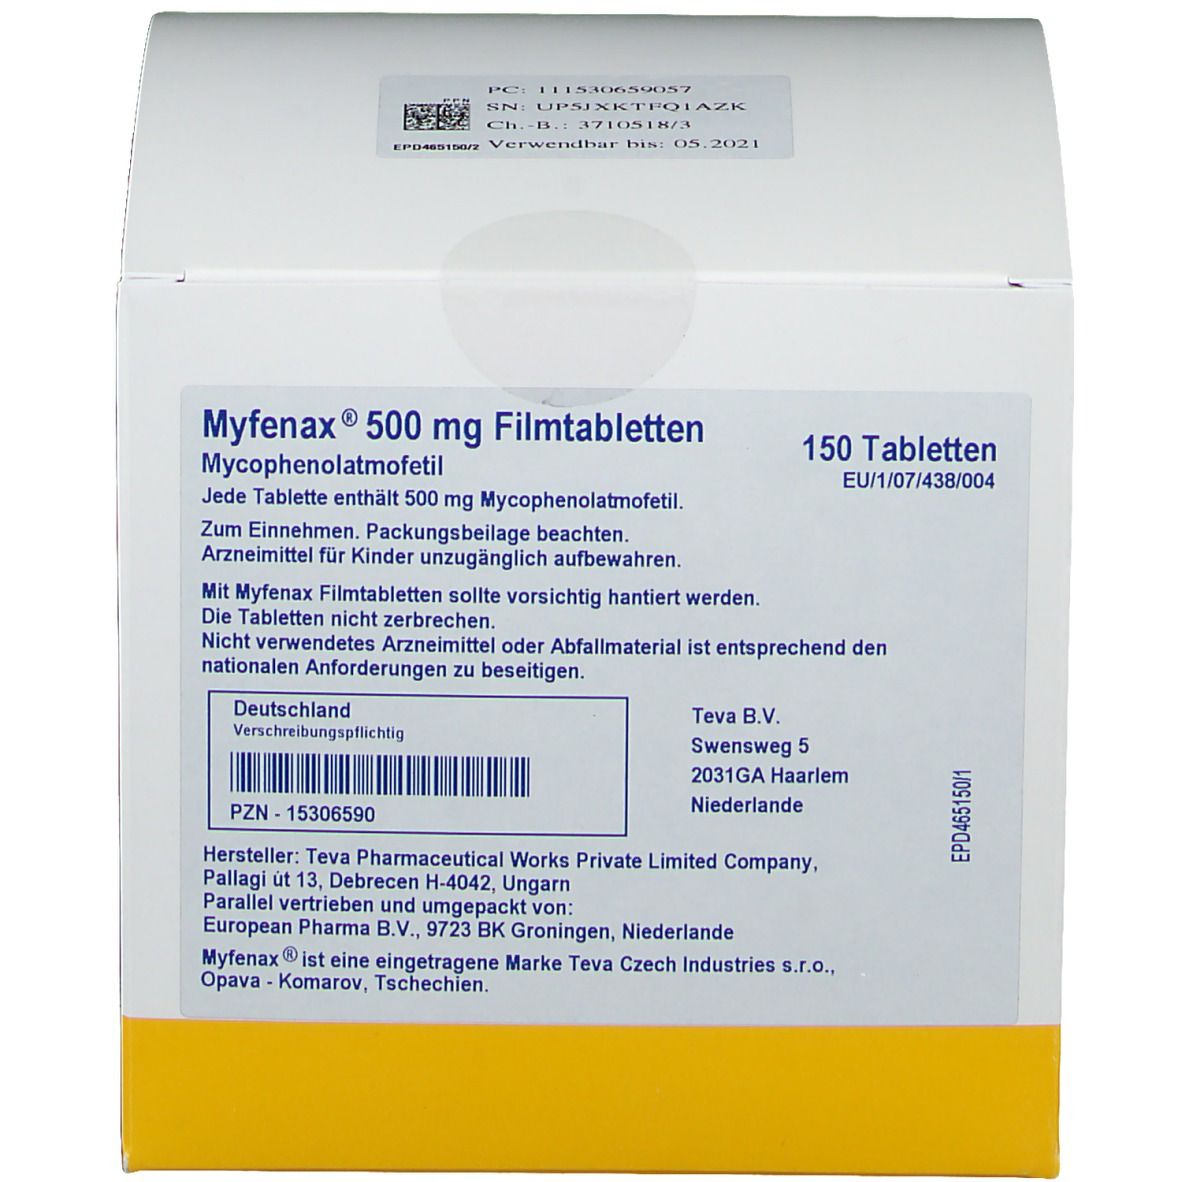 Myfenax®500 mg